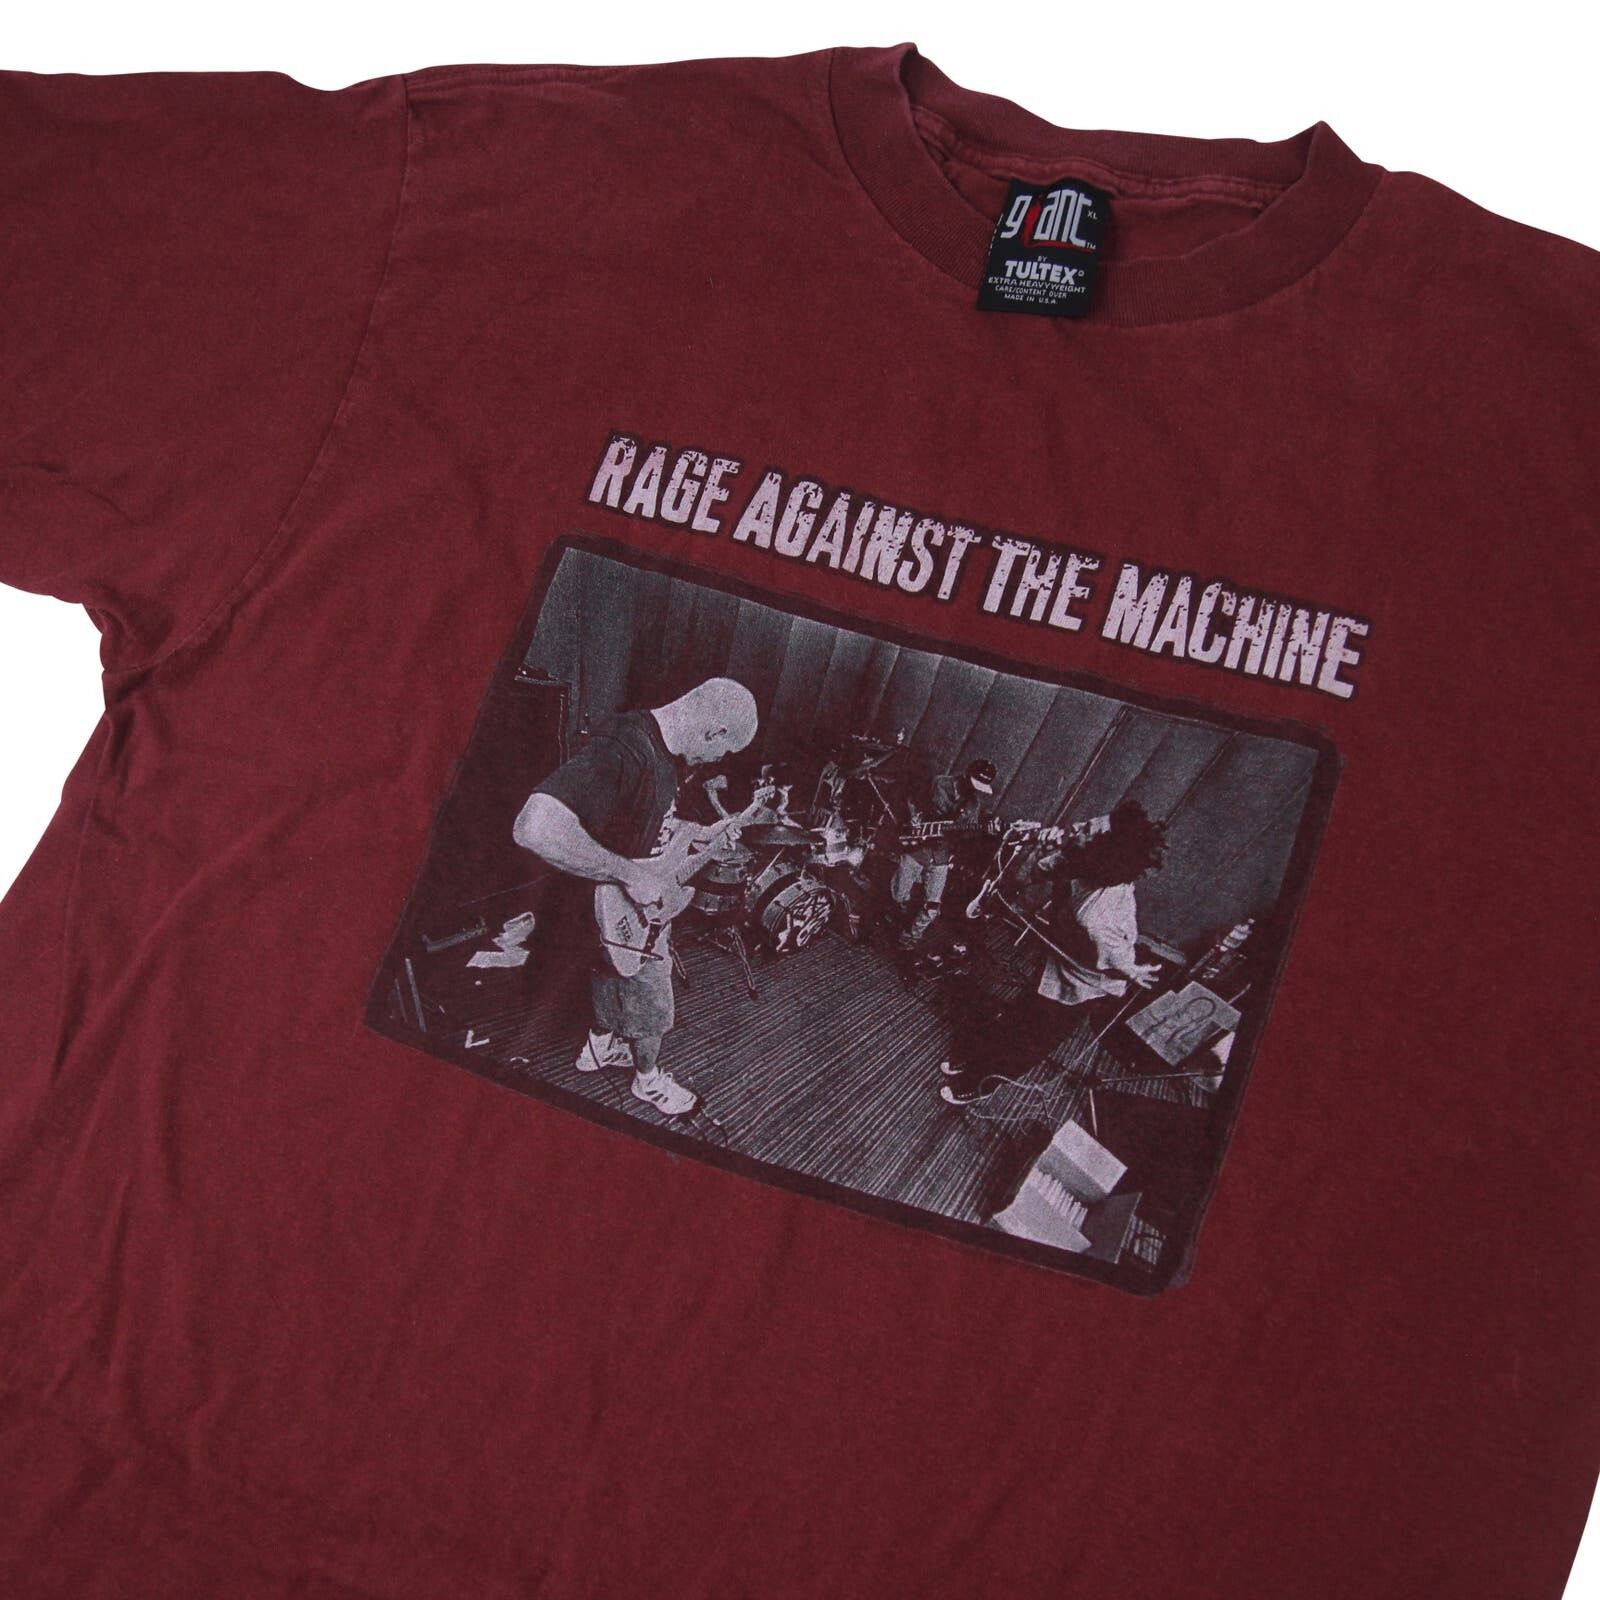 Vintage Vintage 1997 Rage Against the Machine Tour Shirt Size US XL / EU 56 / 4 - 2 Preview